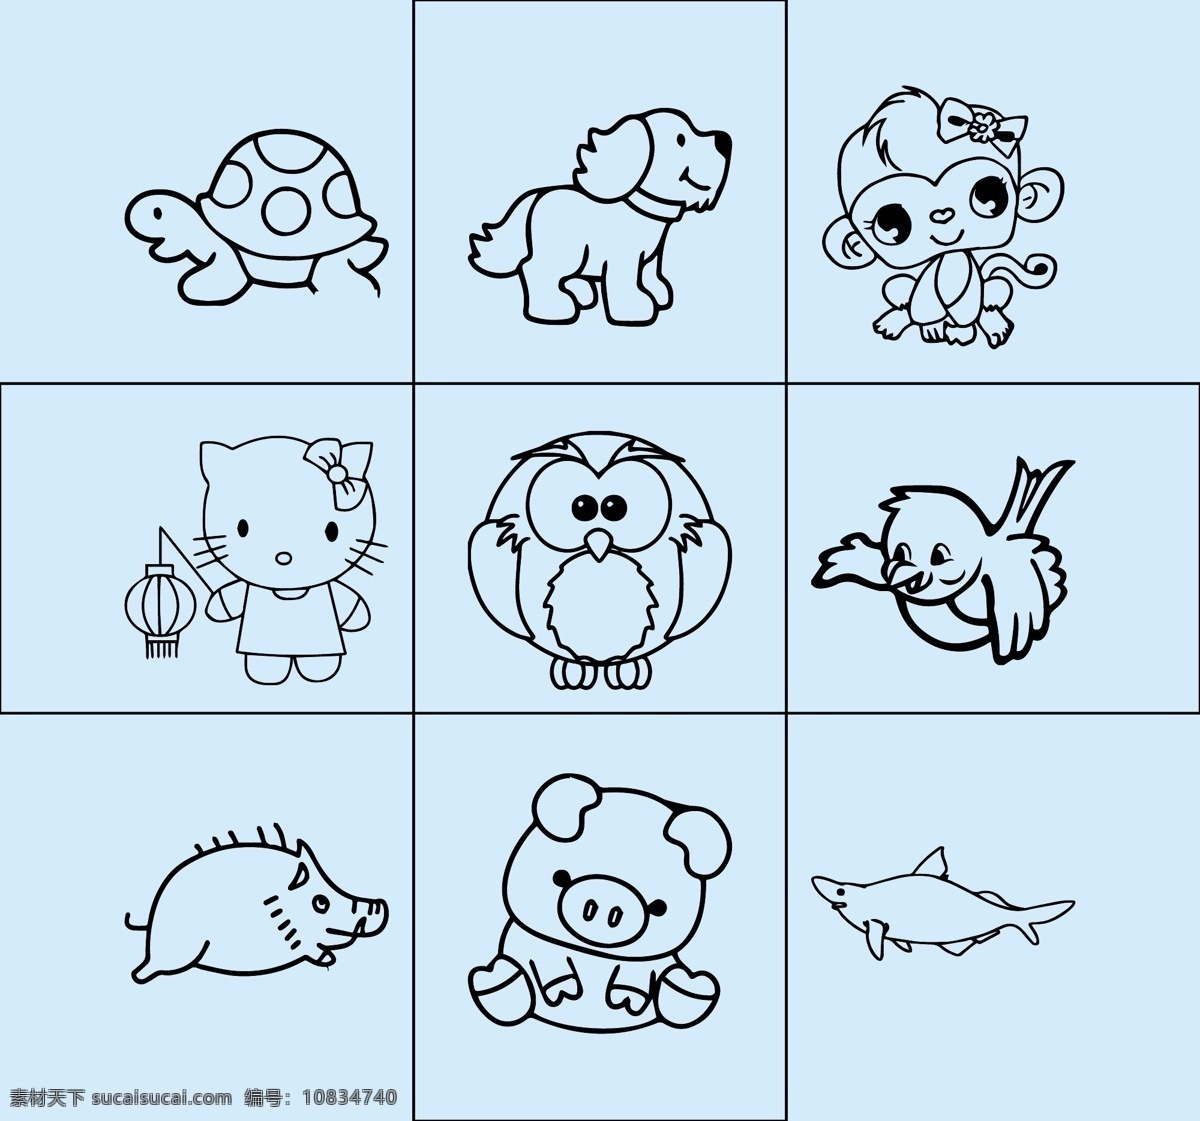 小动物 简笔画 线条图 矢量图 可改动 狗 猴 猫头鹰 鸟 猪 猫 乌龟 动漫动画